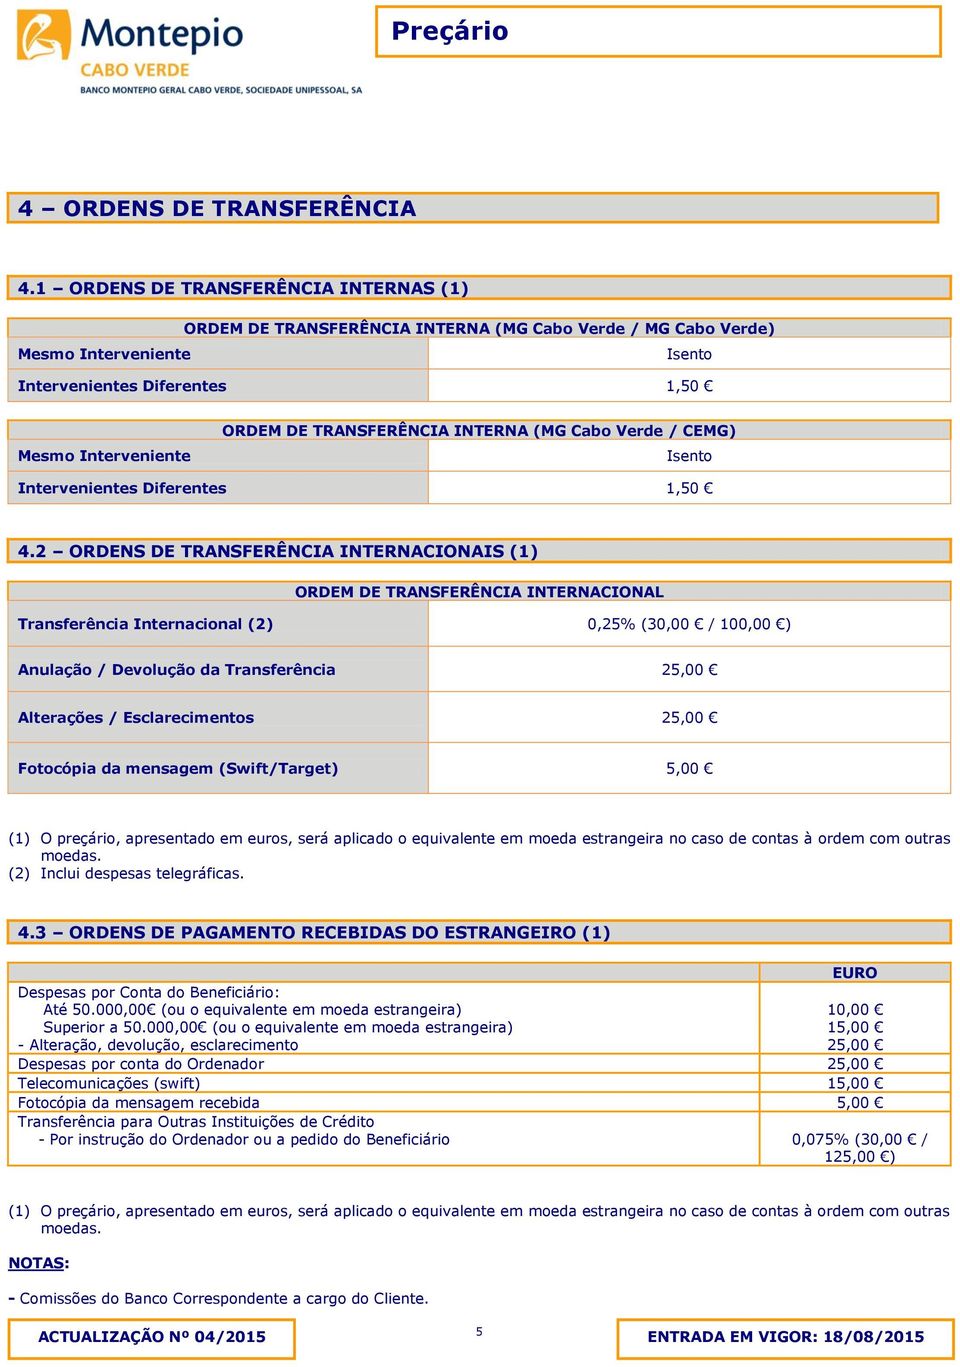 TRANSFERÊNCIA INTERNA (MG Cabo Verde / CEMG) Isento Intervenientes Diferentes 1,50 4.